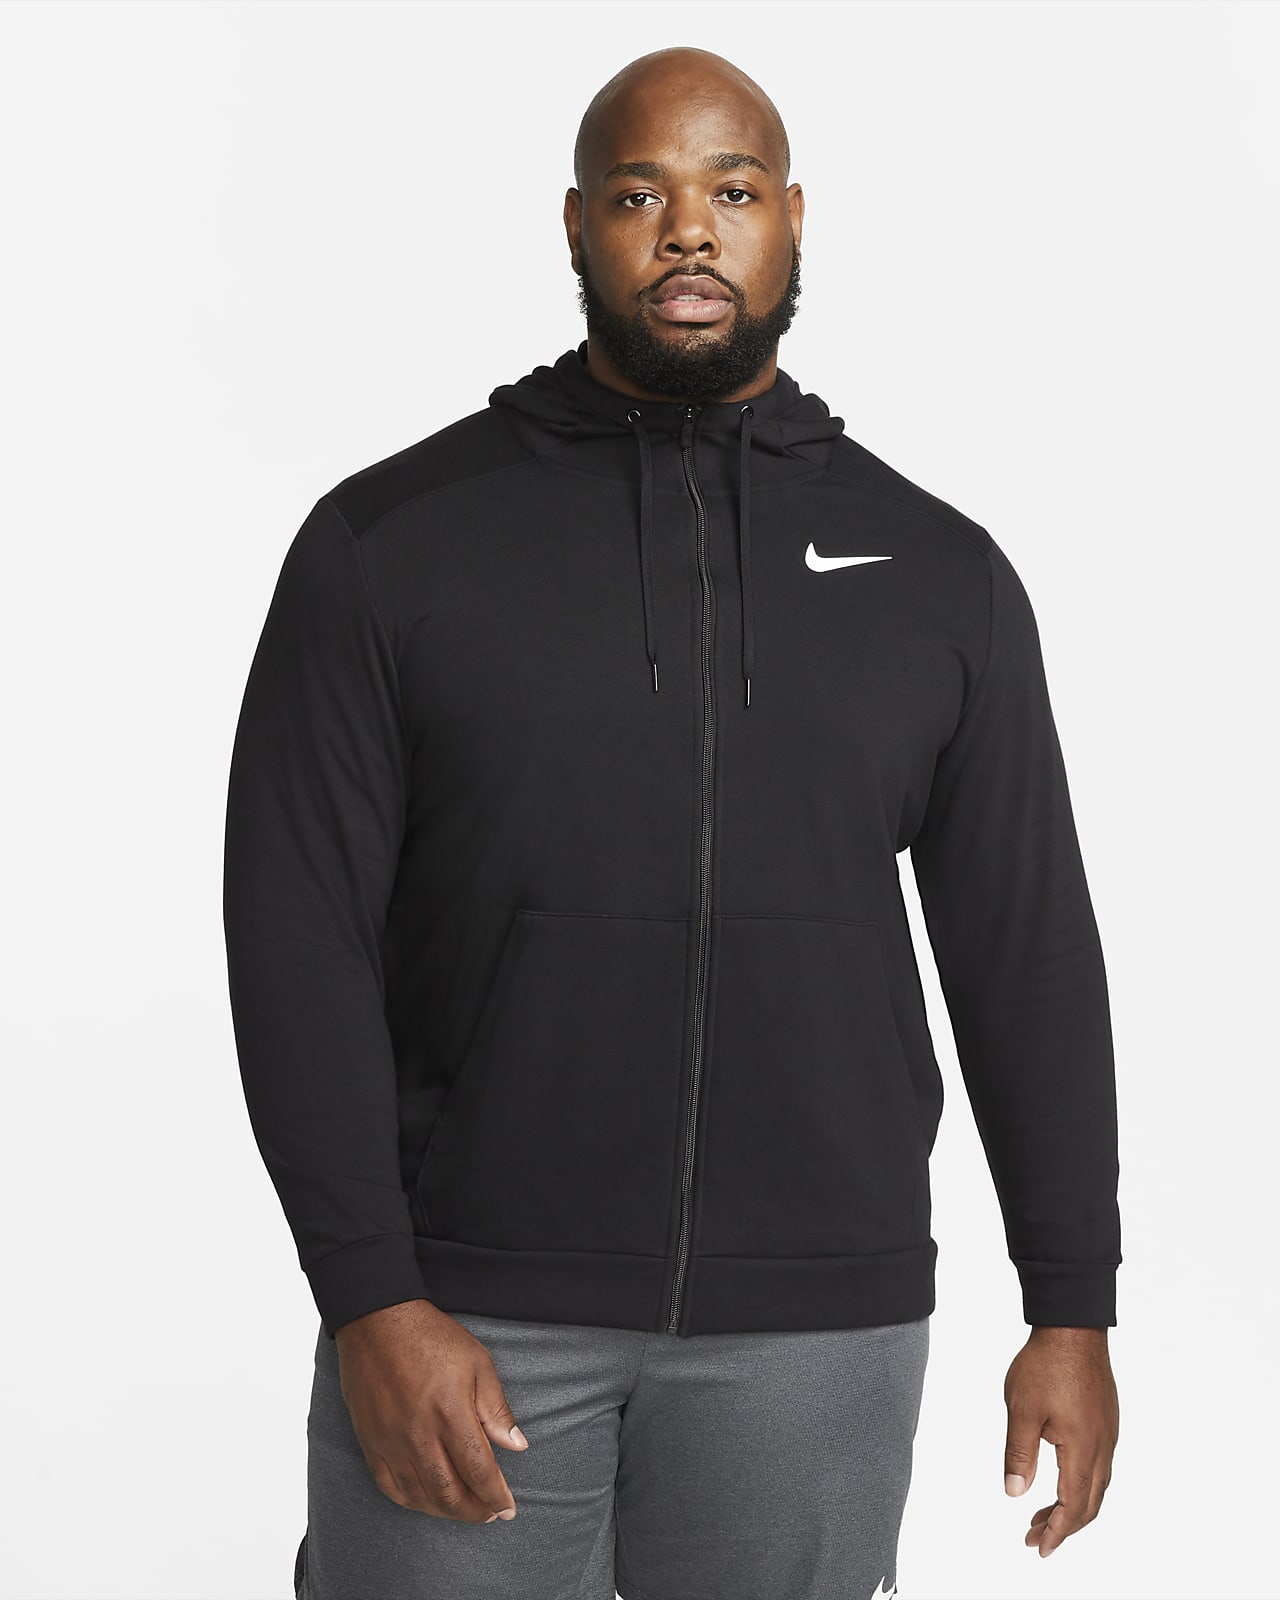 katoen vriendelijke groet Albany Nike Dry Men's Dri-FIT Hooded Fitness Full-Zip. Nike.com